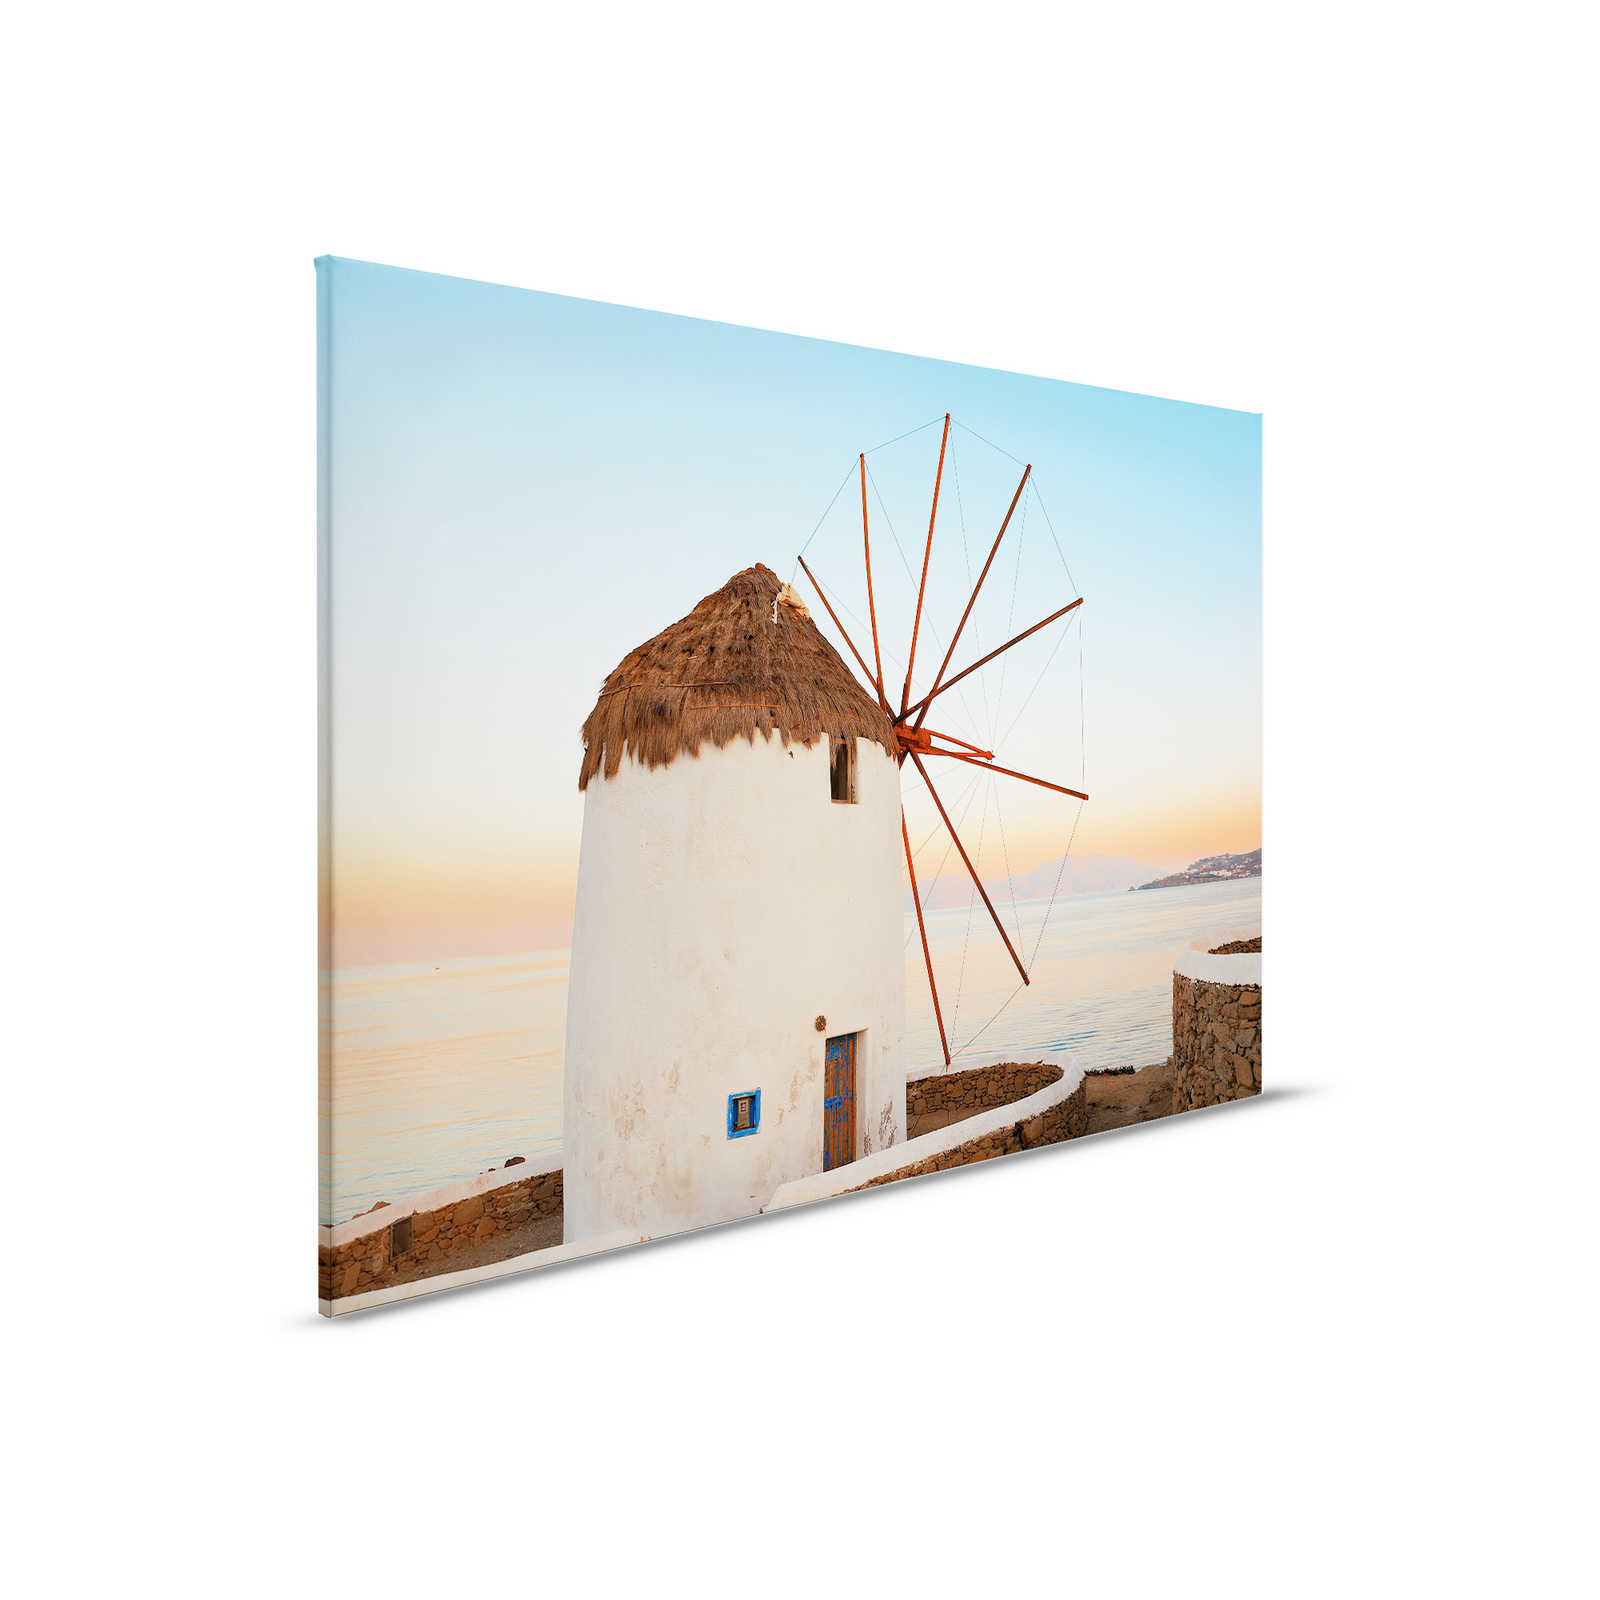         Leinwandbild griechische Windmühle an der Küste – 0,90 m x 0,60 m
    